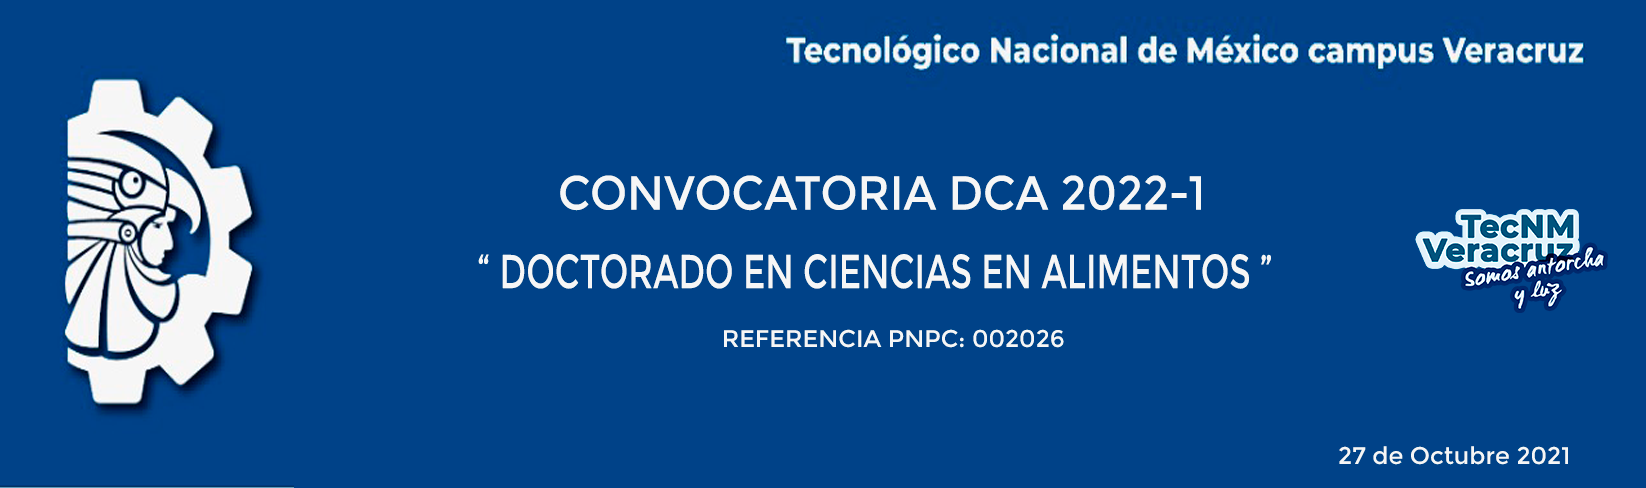 CONVOCATORIA DCA 2022-1 DOCTORADO EN CIENCIAS EN ALIMENTOS 